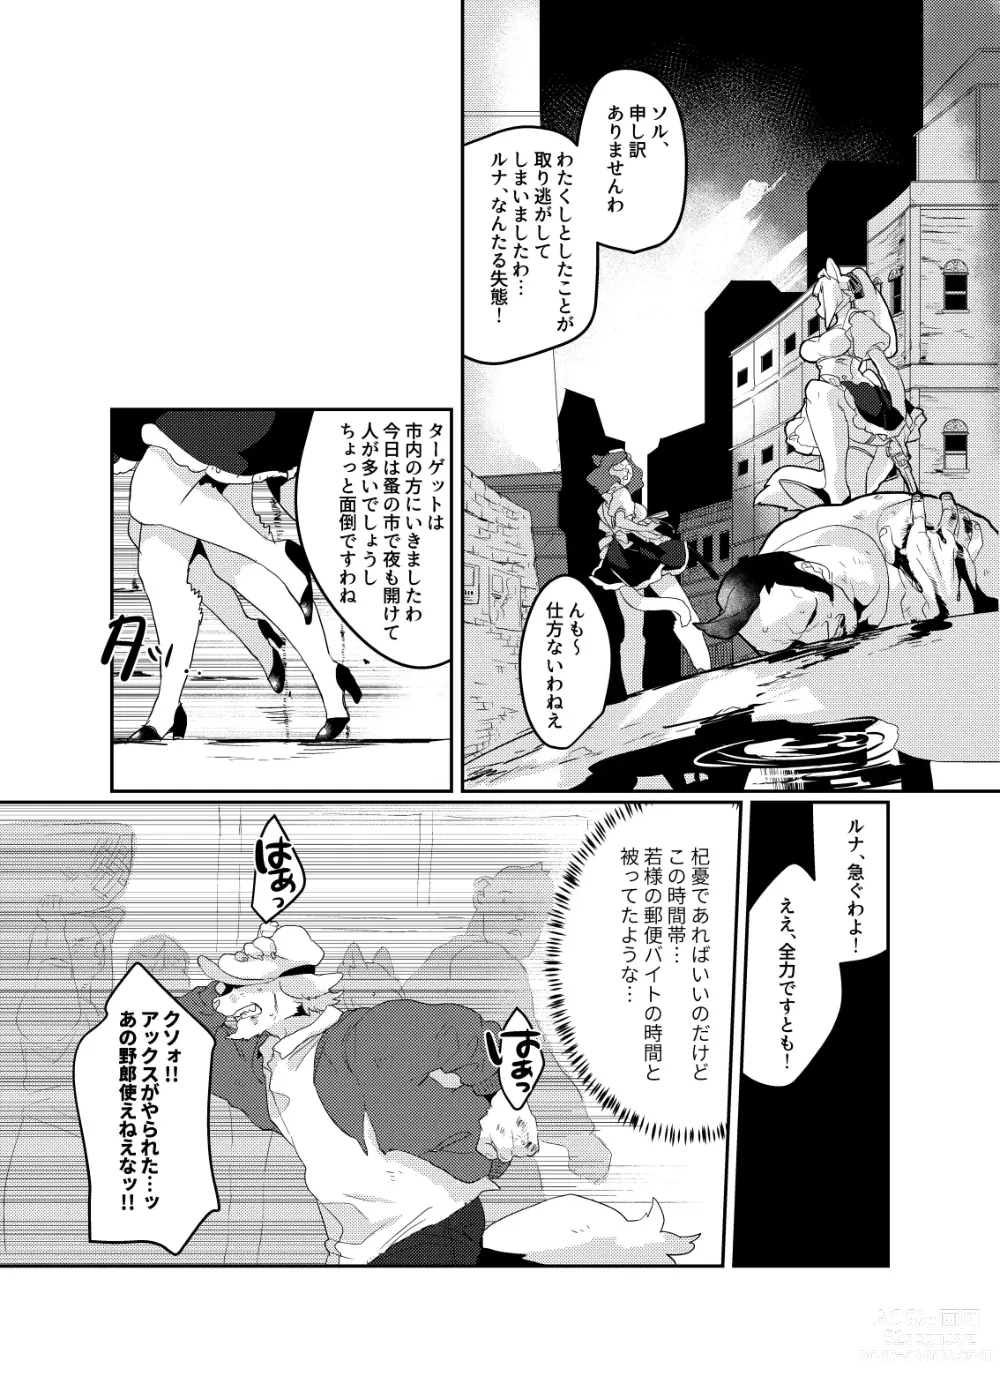 Page 31 of doujinshi Meido inHEAVEN